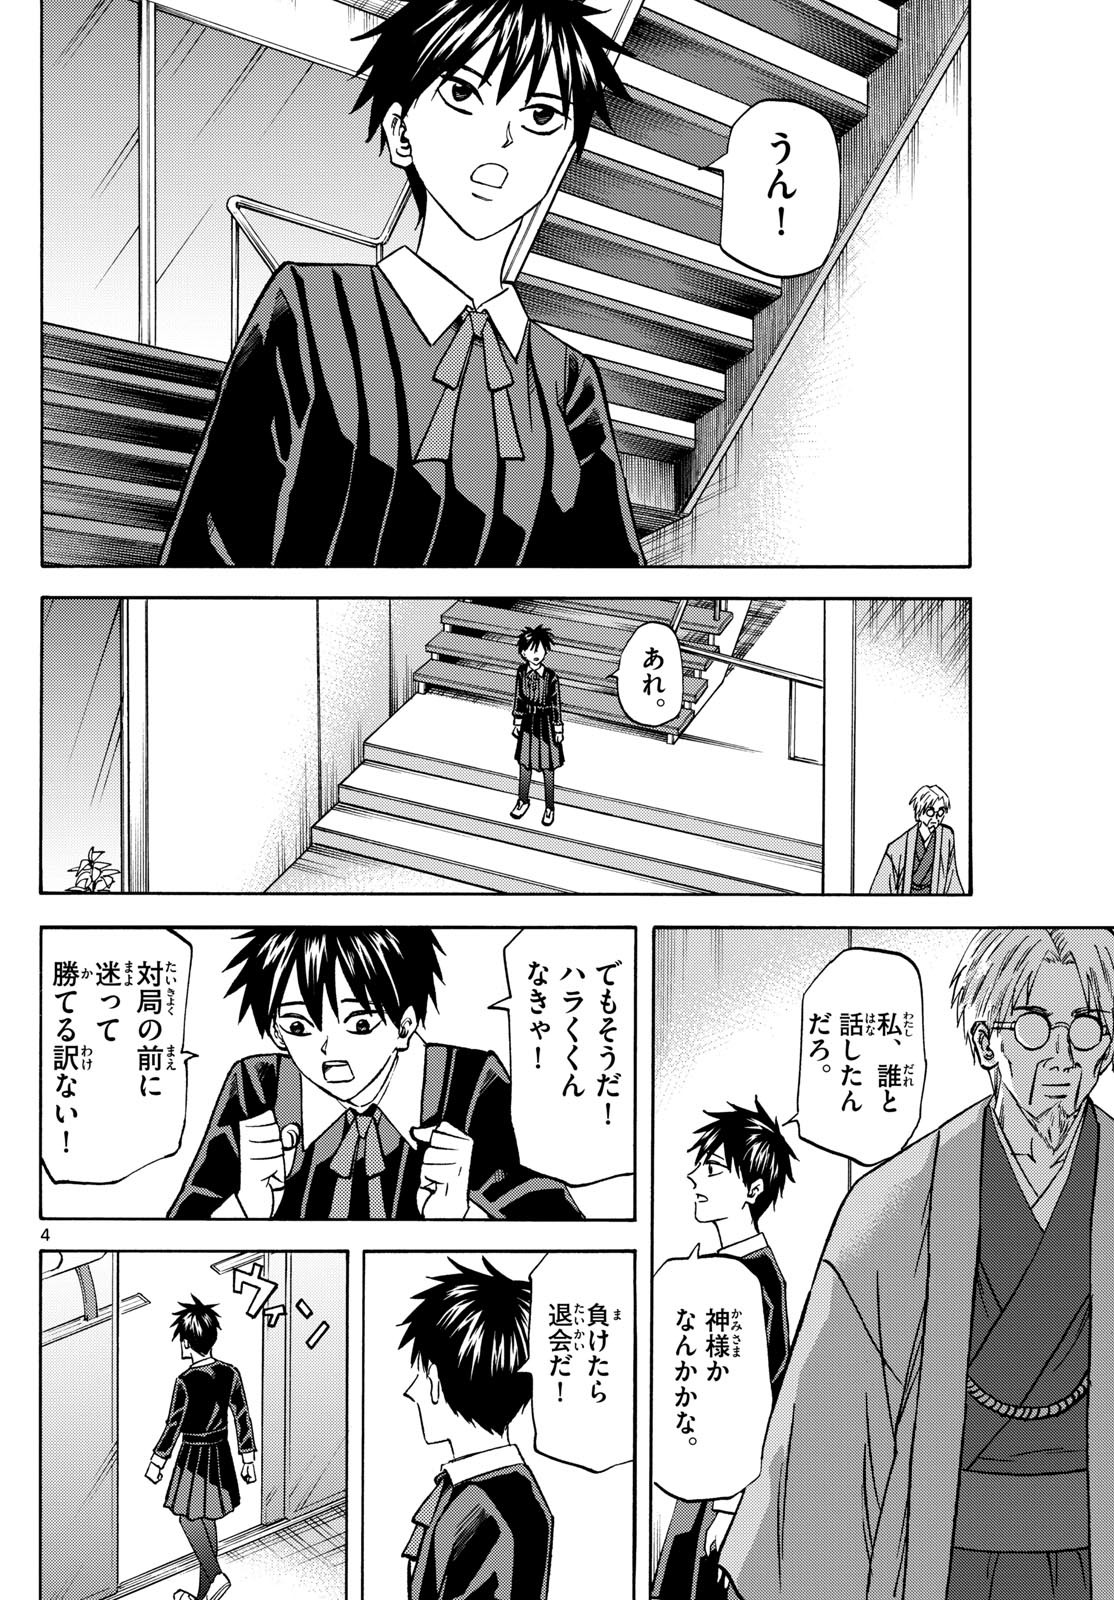 Ryu-to-Ichigo - Chapter 181 - Page 4